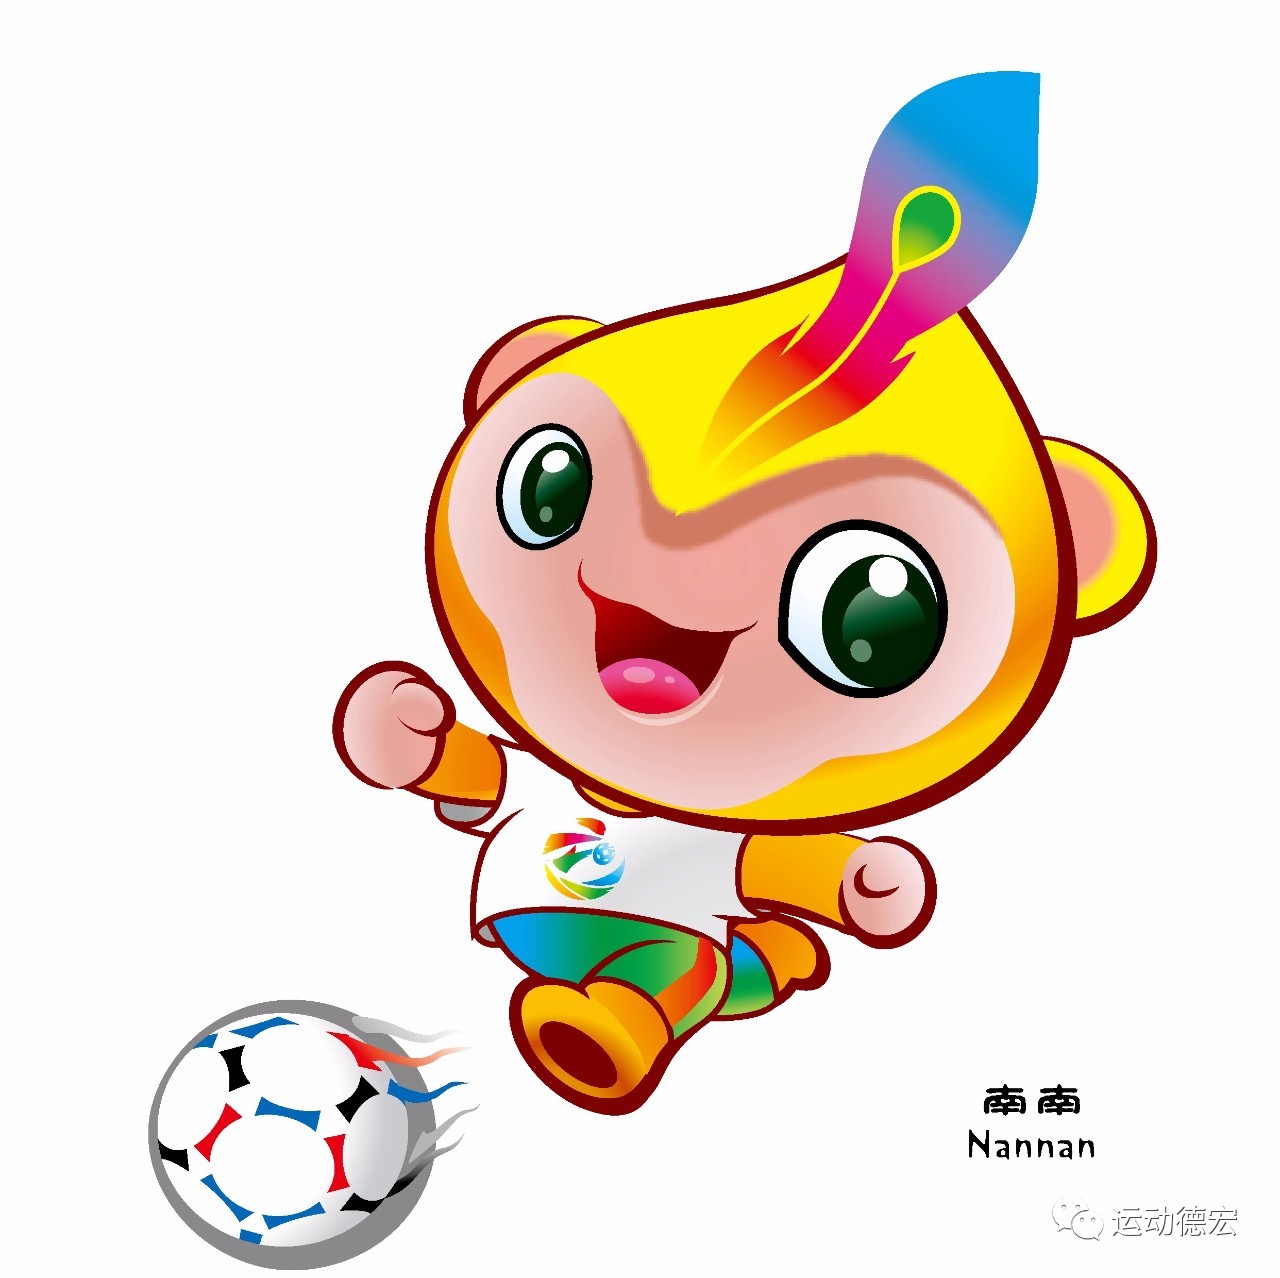 足球比赛吉祥物设计图片